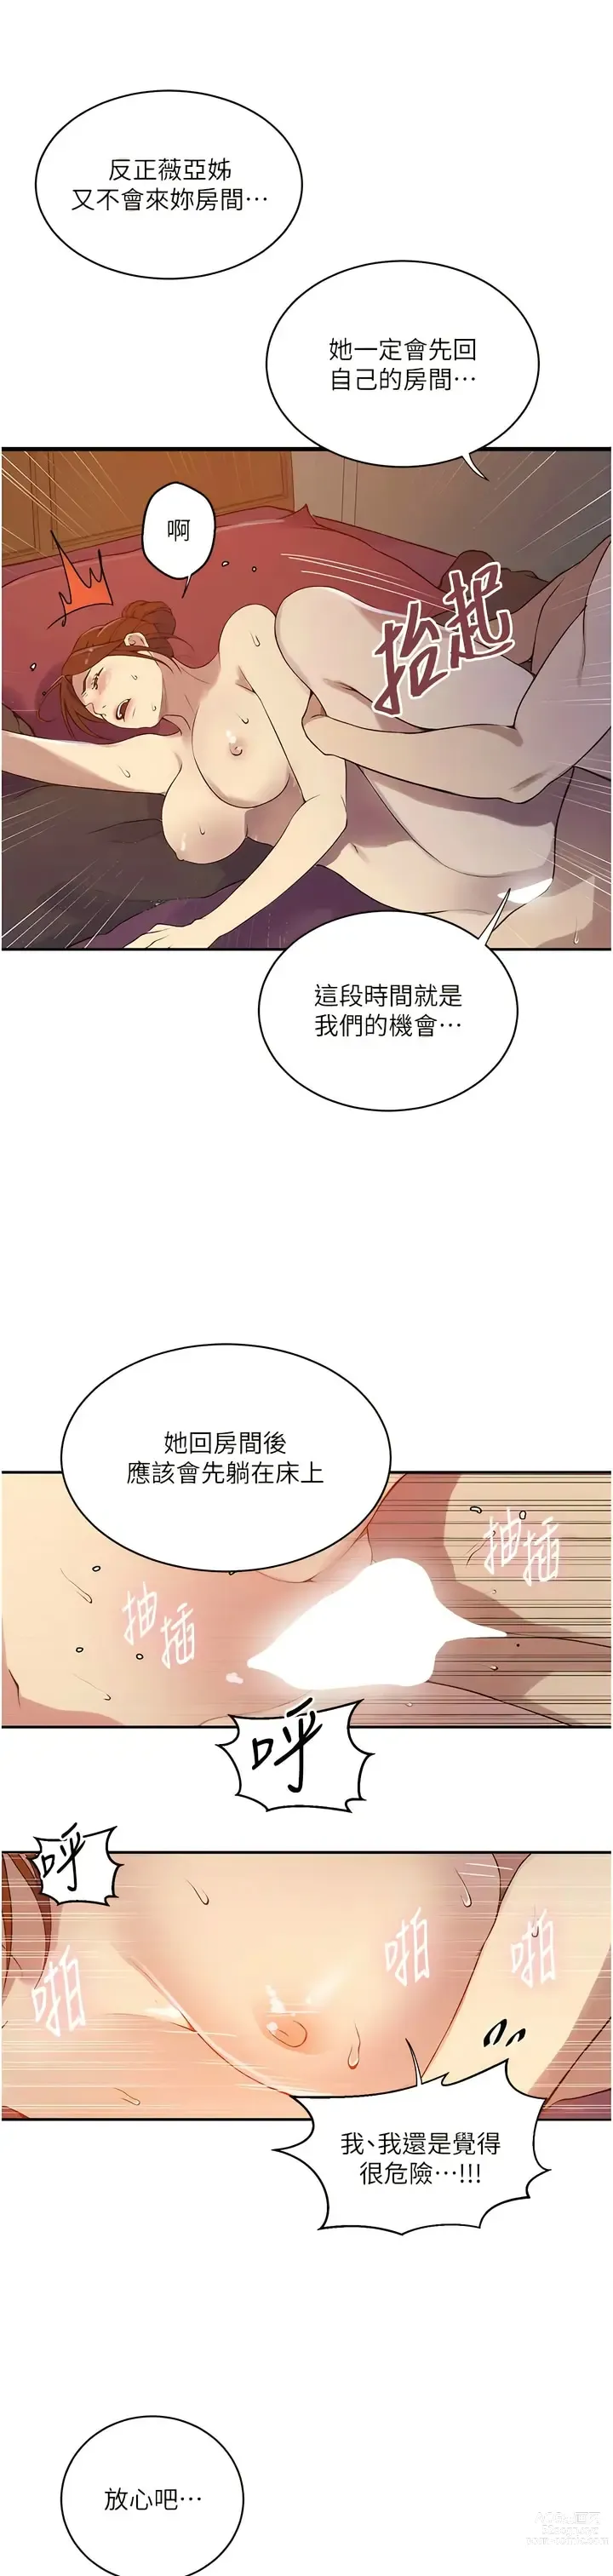 Page 879 of manga 秘密教学/The Class Of The Secret 181-208